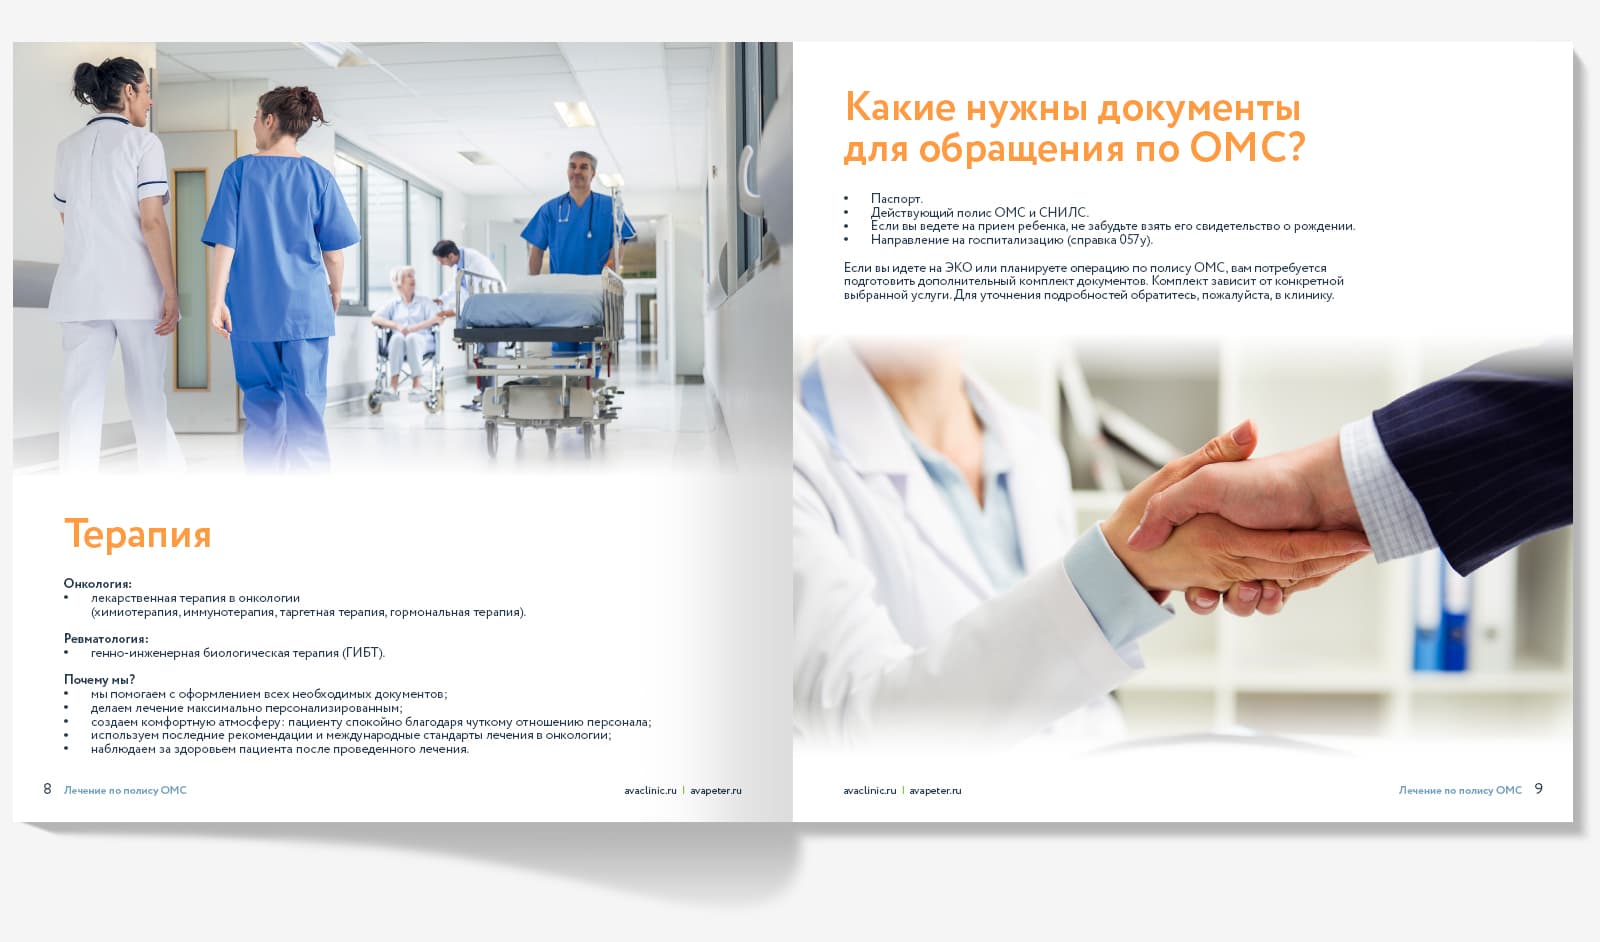 Сделали брошюру «Диагностика и лечение по полису ОМС» для клиники Скандинавия